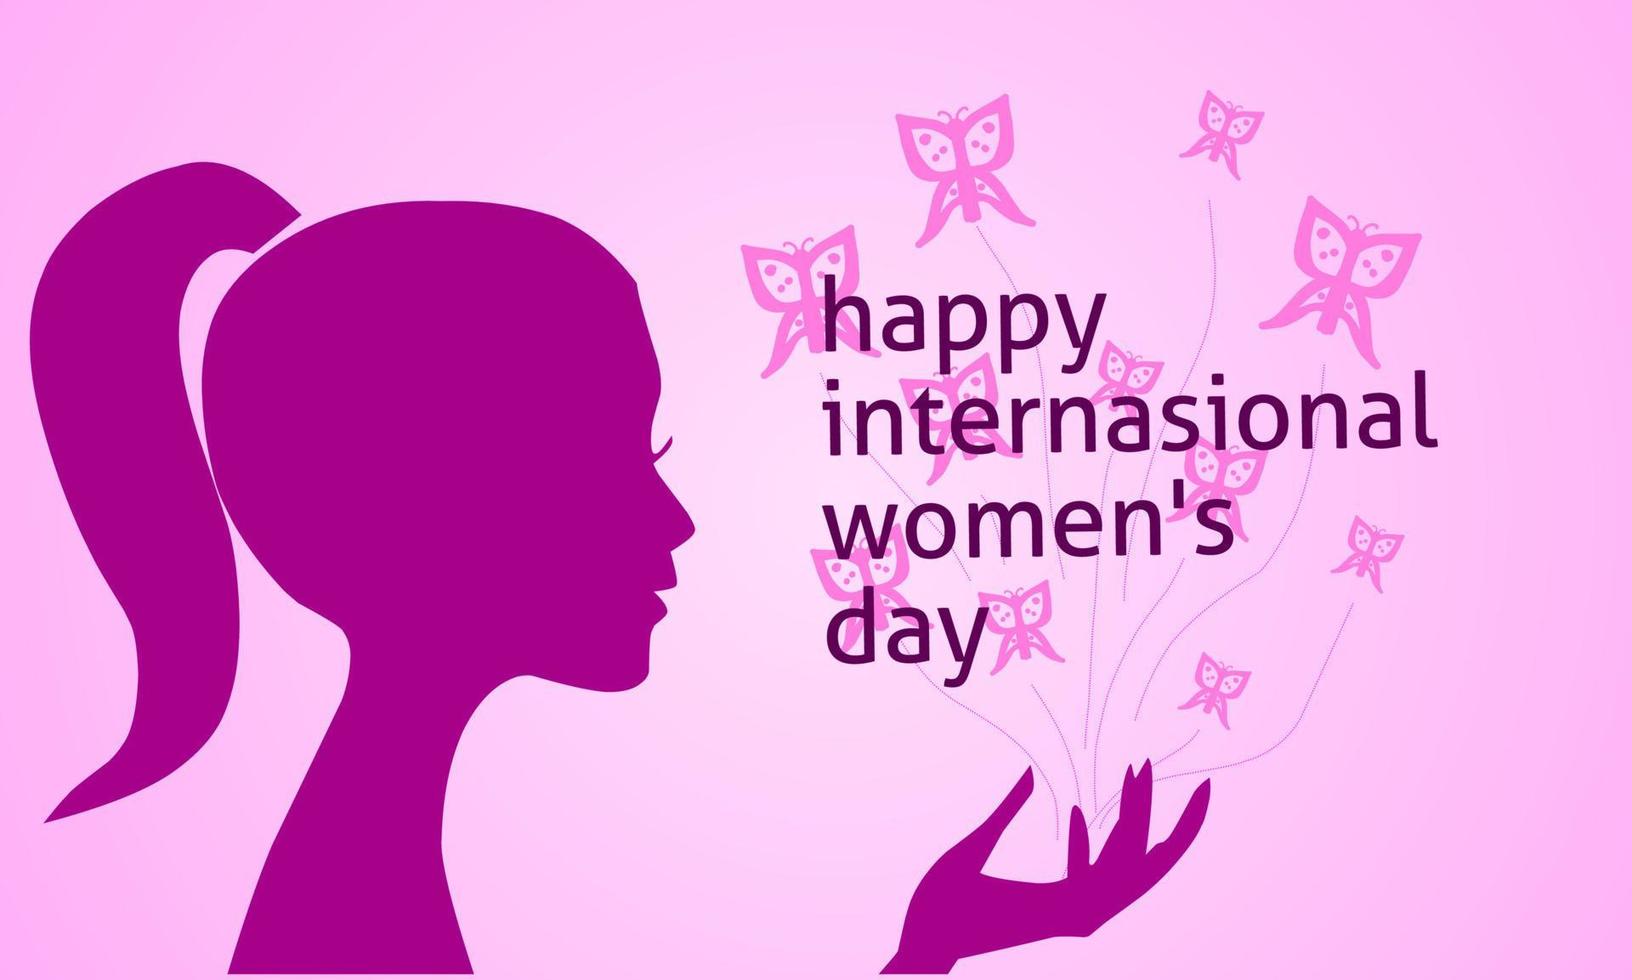 Grattis på fira de värld kvinnors dag vektor